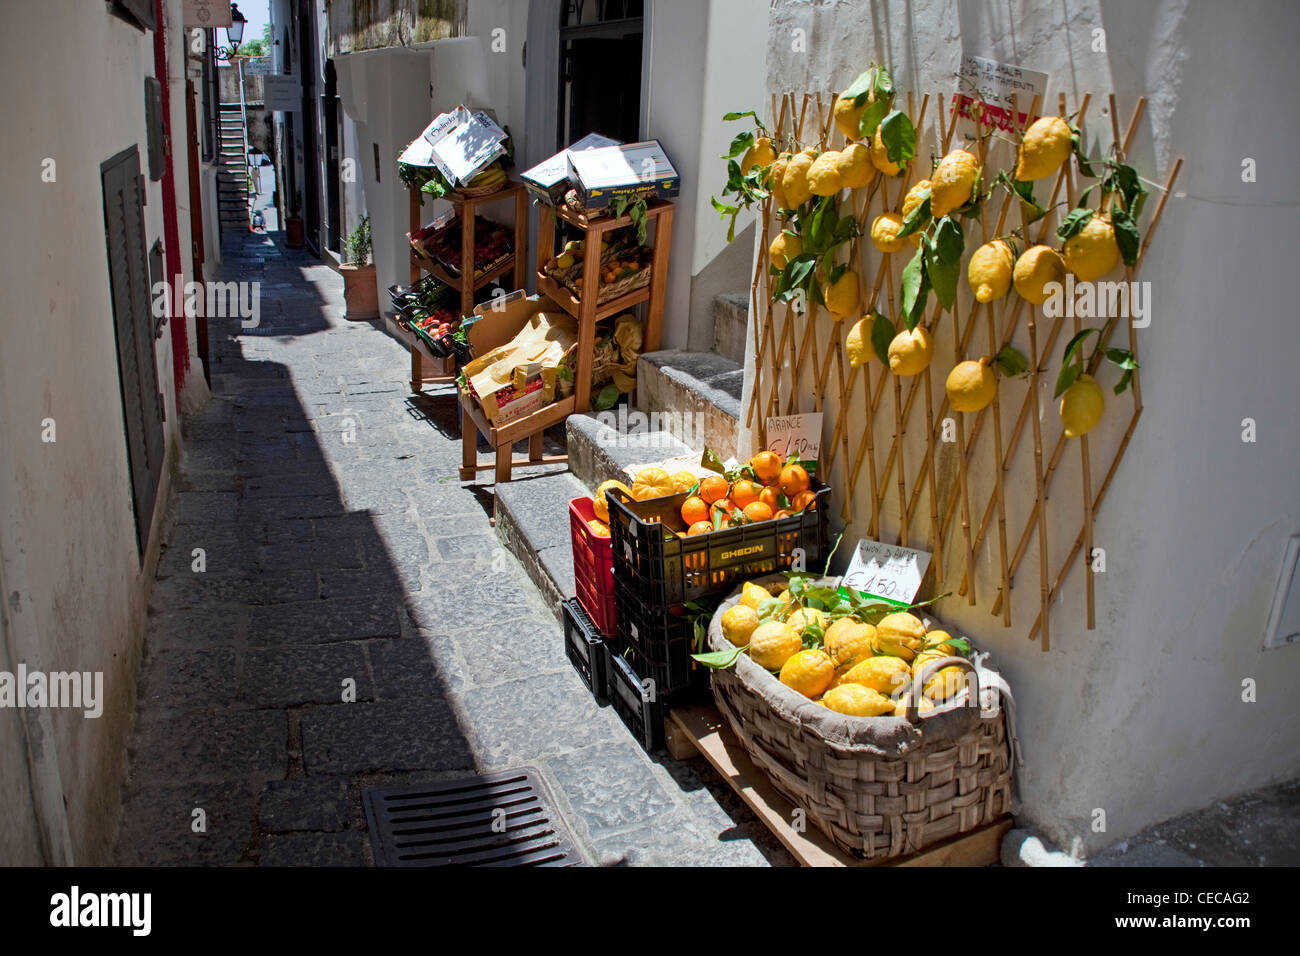 Citrons frais à un magasin de fruits, village d'Amalfi, côte amalfitaine, UNESCO World Heritage site, Campanie, Italie, Méditerranée, Europe Banque D'Images